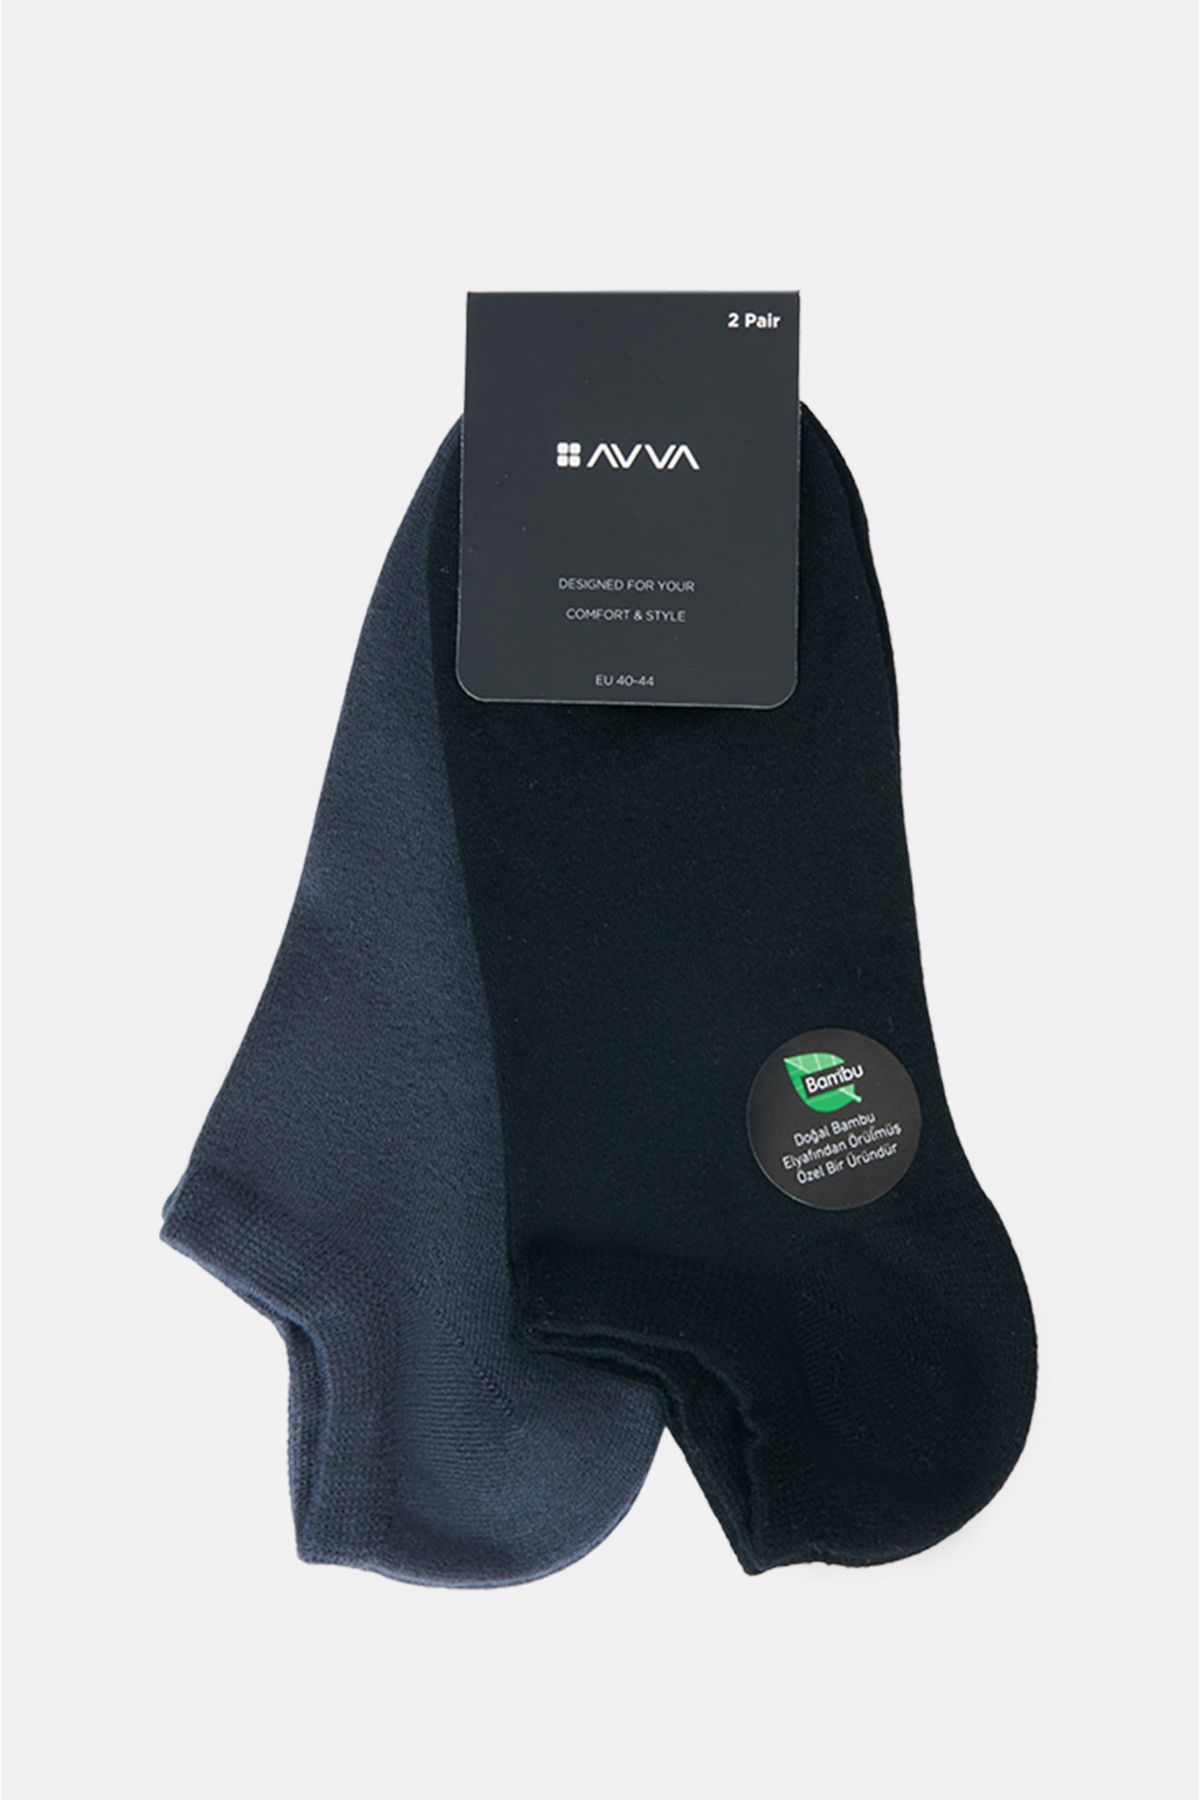 Avva Erkek Antrasit-siyah 2'li Bambu Patik Çorap B008506